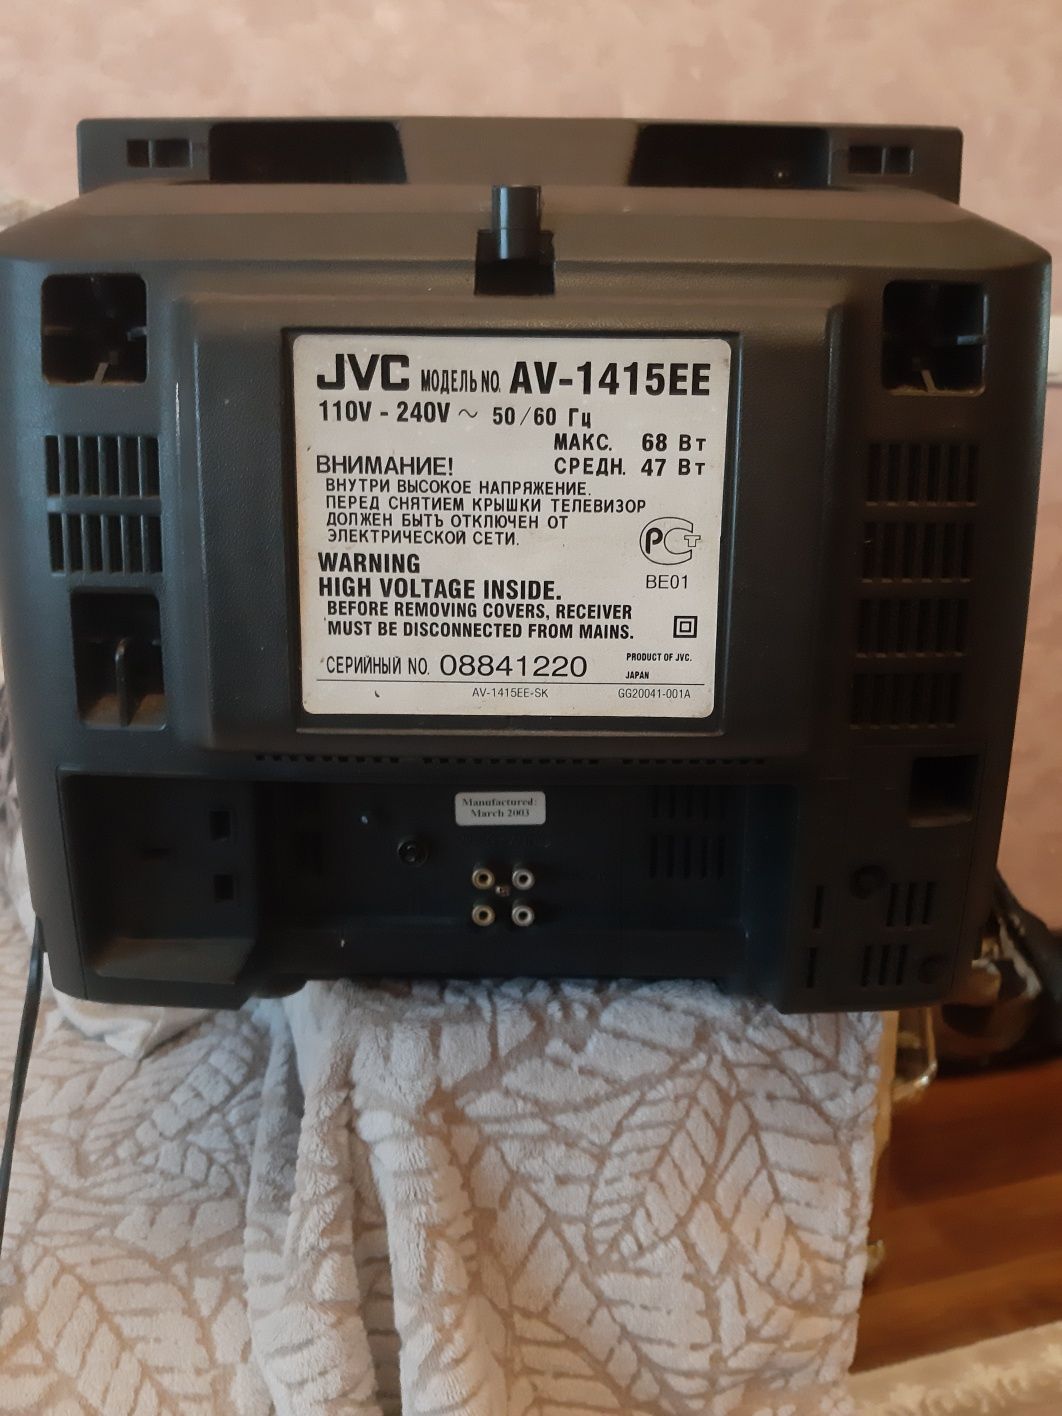 Продам кухонный маленький телевизор б/у  JVC диагональ 32